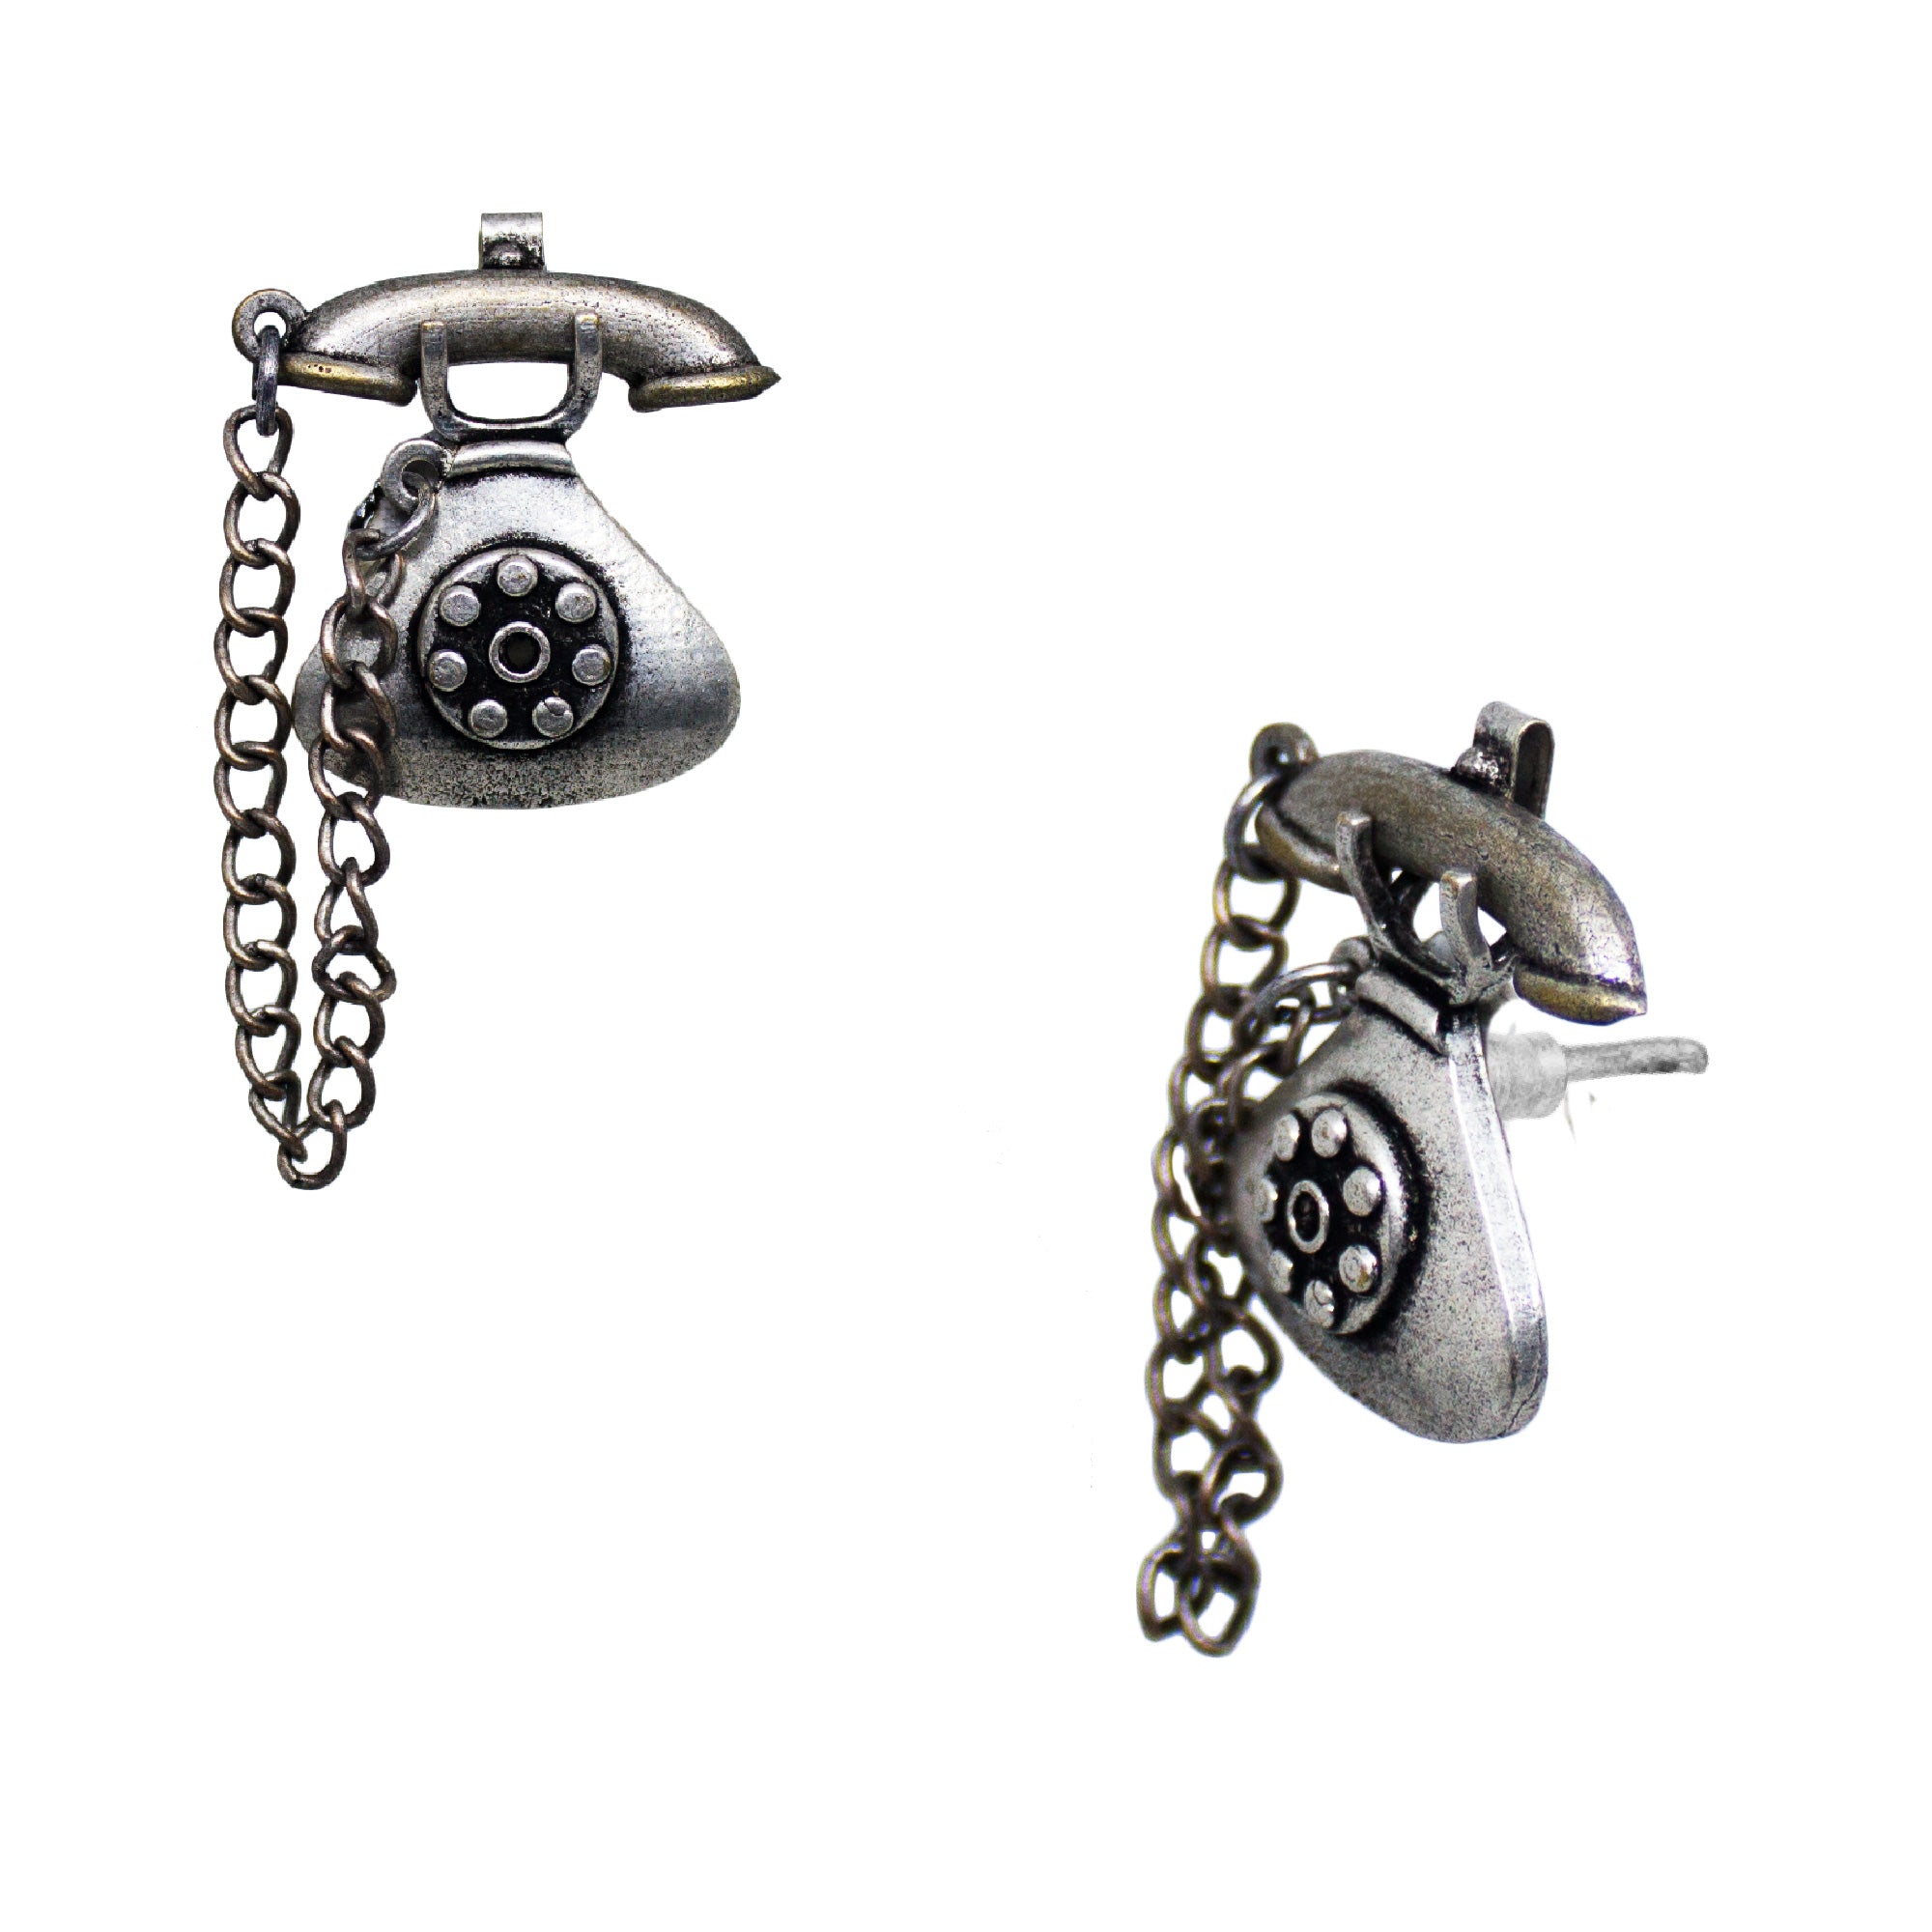 Abhinn Silver Replica Antique Telephone Design Earrings For Women